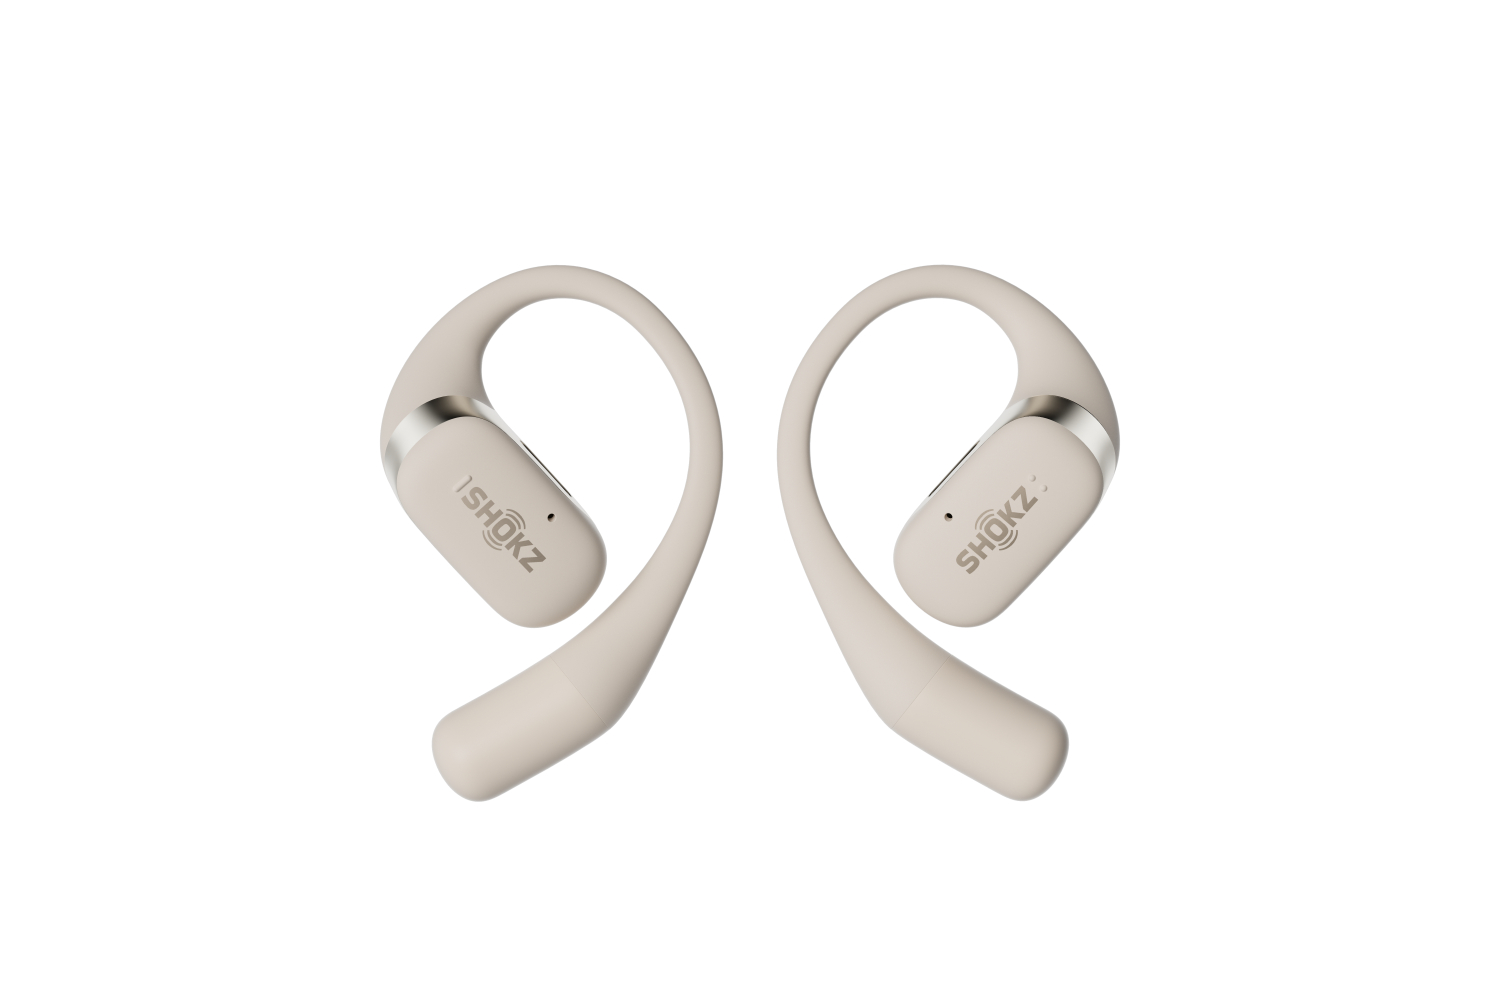 Shokz OpenFit True Wireless Earbuds | Beige | Ireland